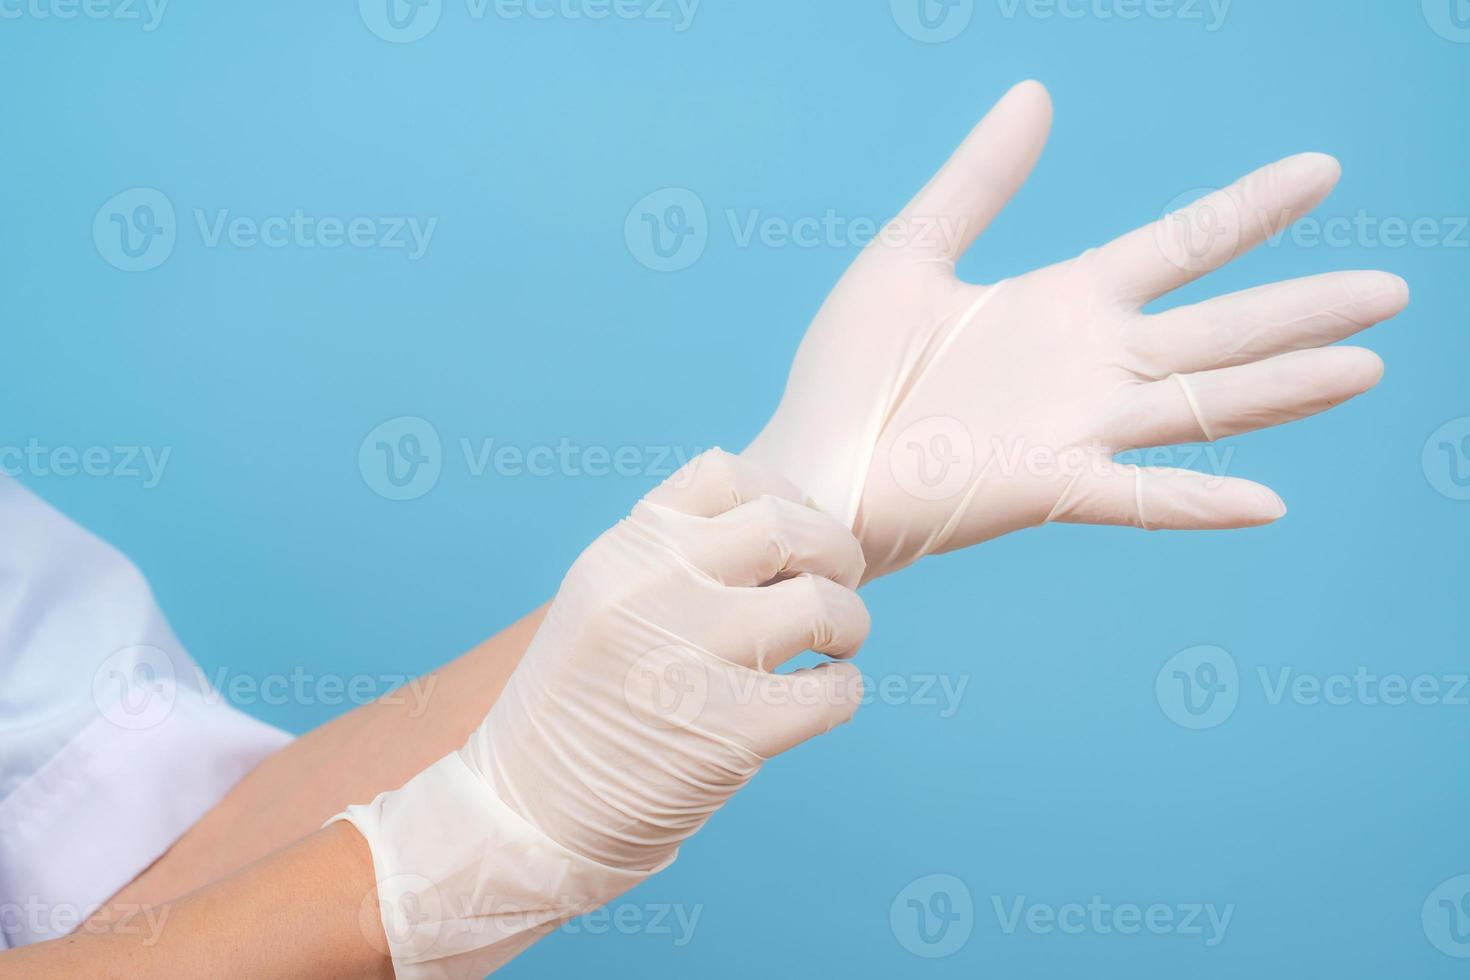 mãos em luvas esterilizadas enfermeira ou médico foto